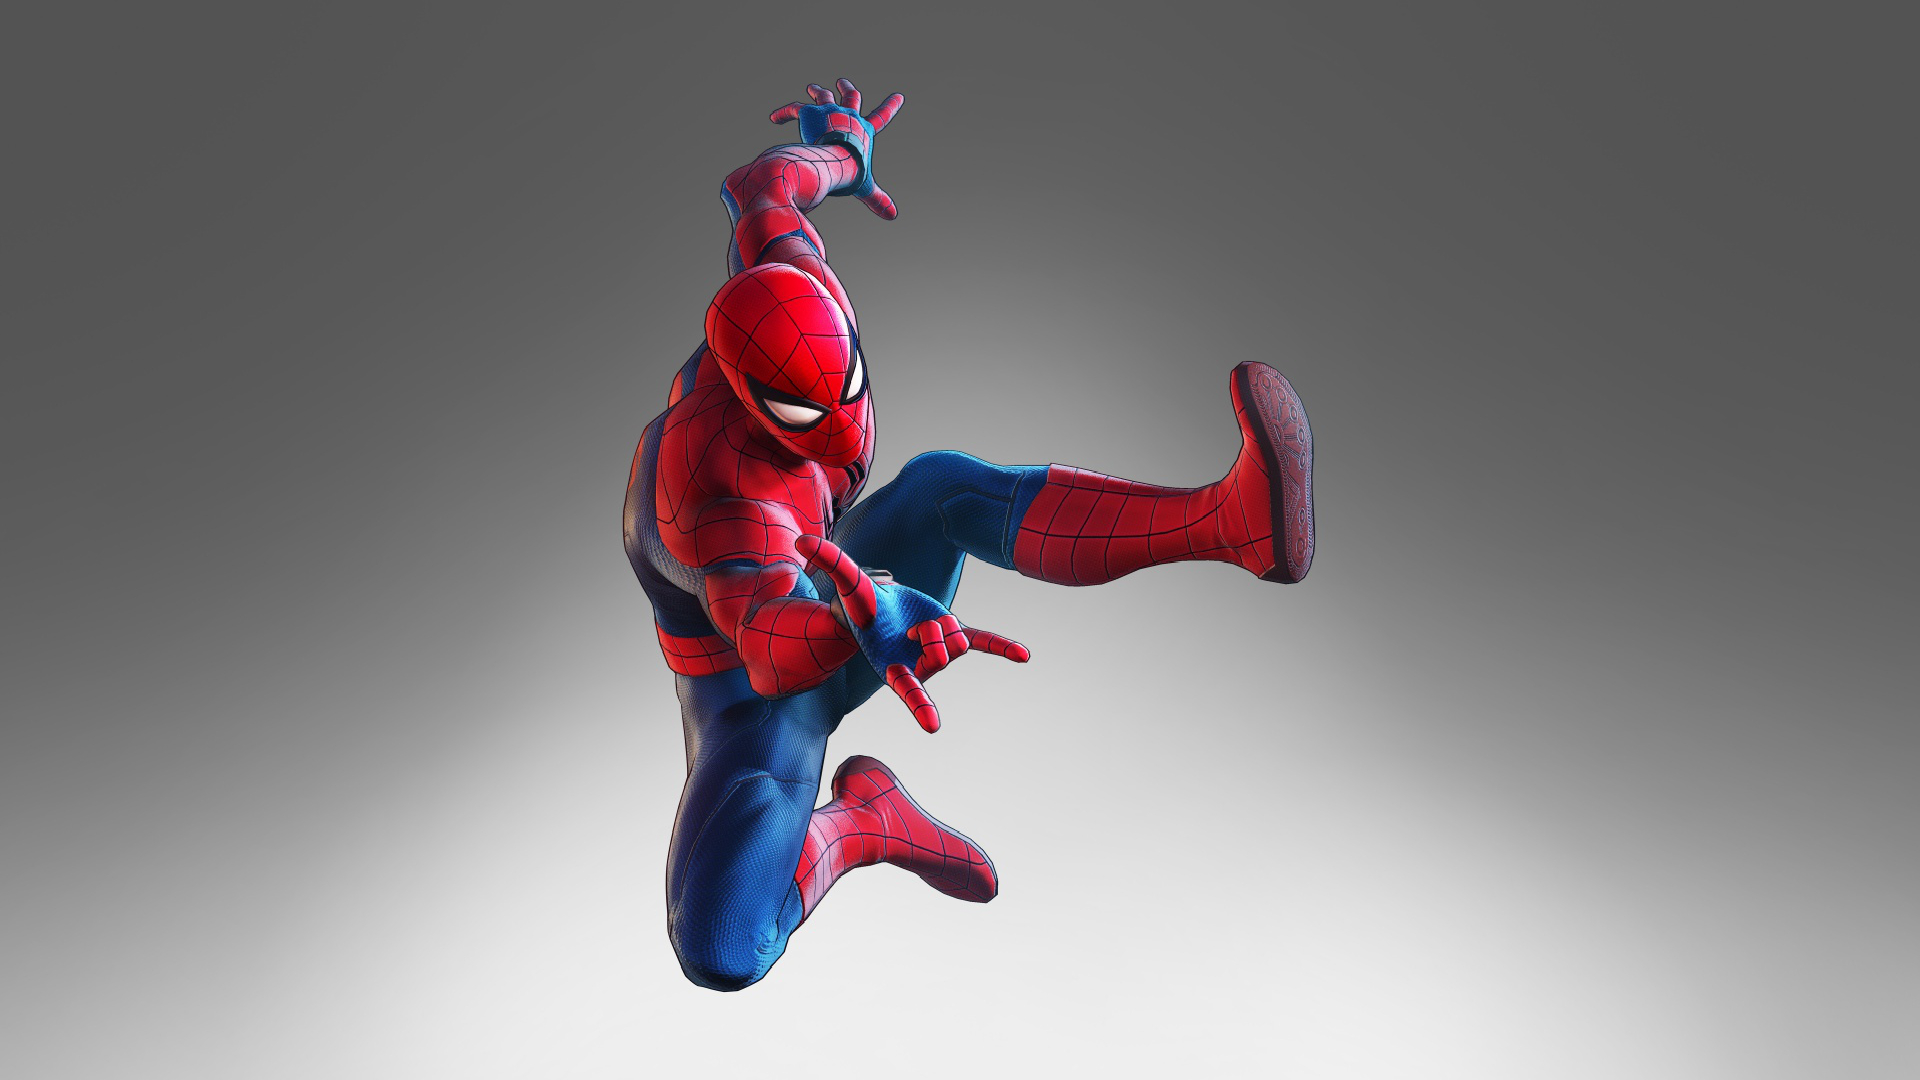 fond d'écran gratuit,homme araignée,super héros,personnage fictif,figurine,figurine